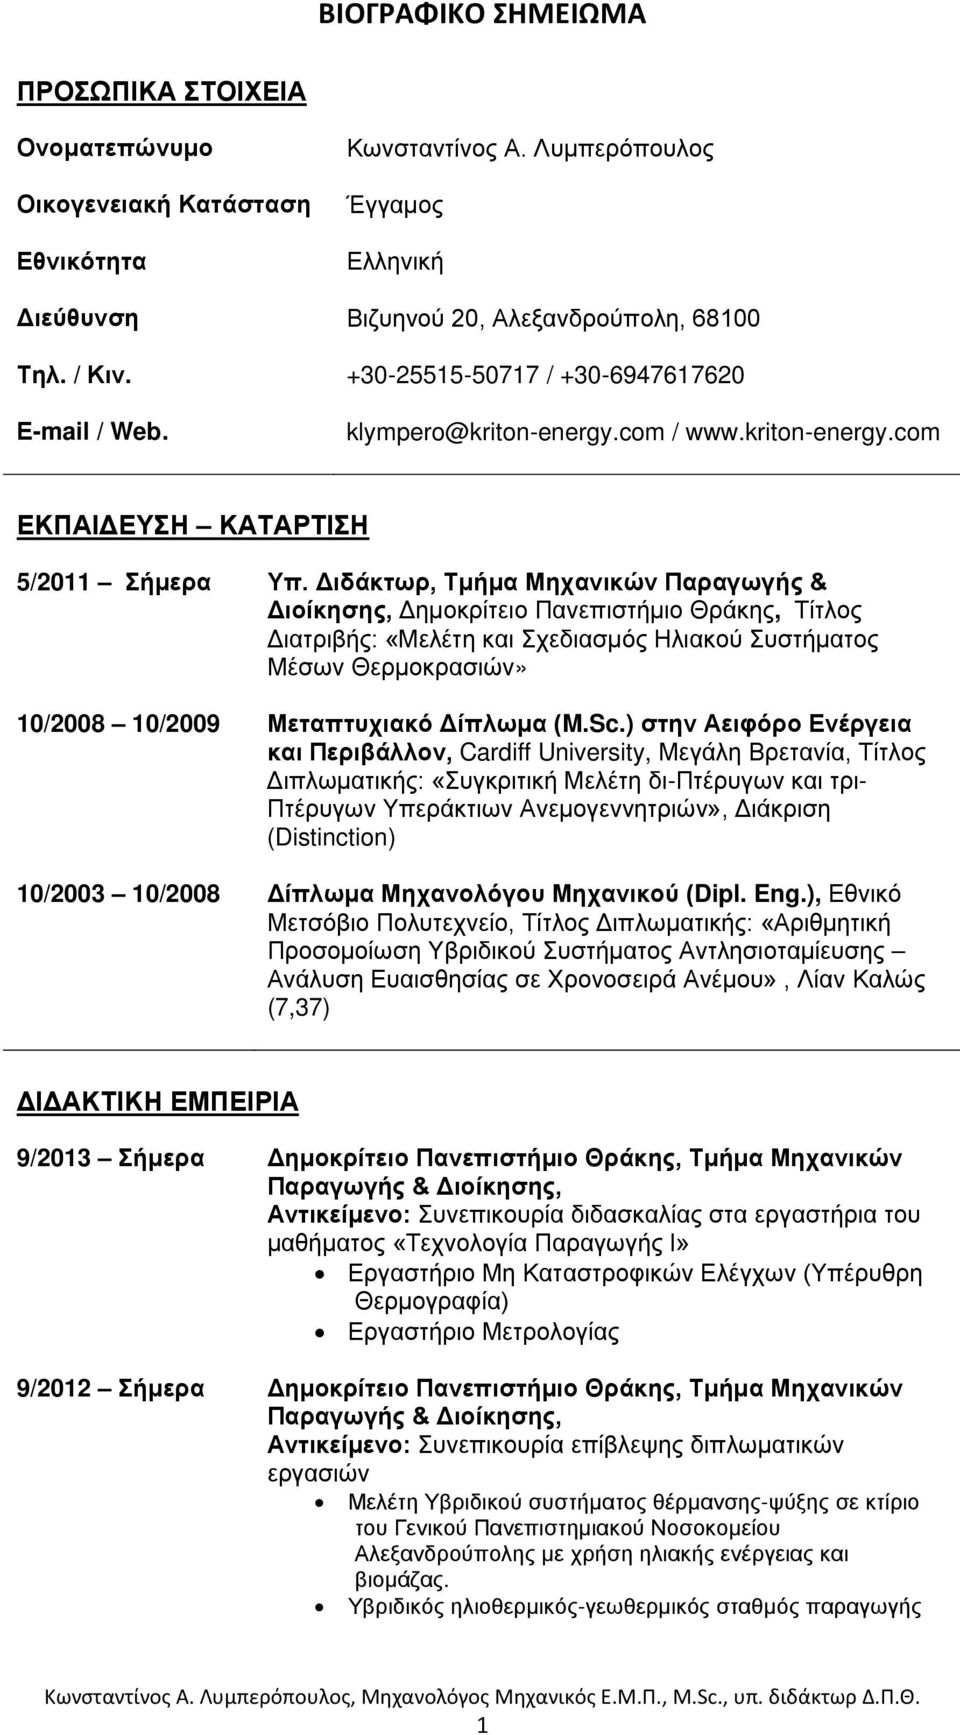 Διδάκτωρ, Τμήμα Μηχανικών Παραγωγής & Διοίκησης, Δημοκρίτειο Πανεπιστήμιο Θράκης, Τίτλος Διατριβής: «Μελέτη και Σχεδιασμός Ηλιακού Συστήματος Μέσων Θερμοκρασιών» 10/2008 10/2009 Μεταπτυχιακό Δίπλωμα